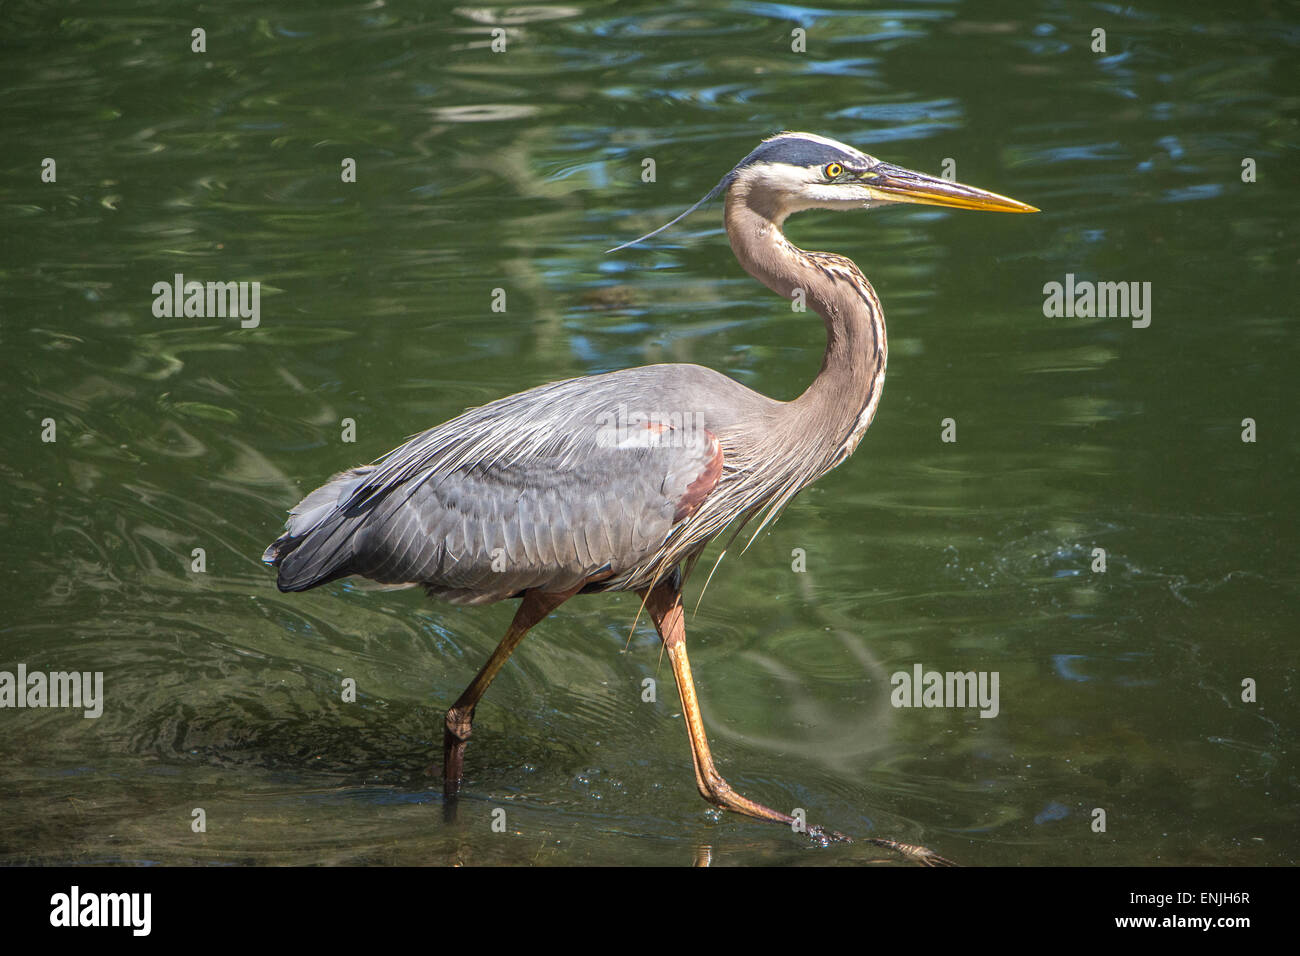 Splendido esemplare di un grande airone cenerino, pesca su uno stagno, a Julington Creek, a sud della città di Jacksonville Foto Stock